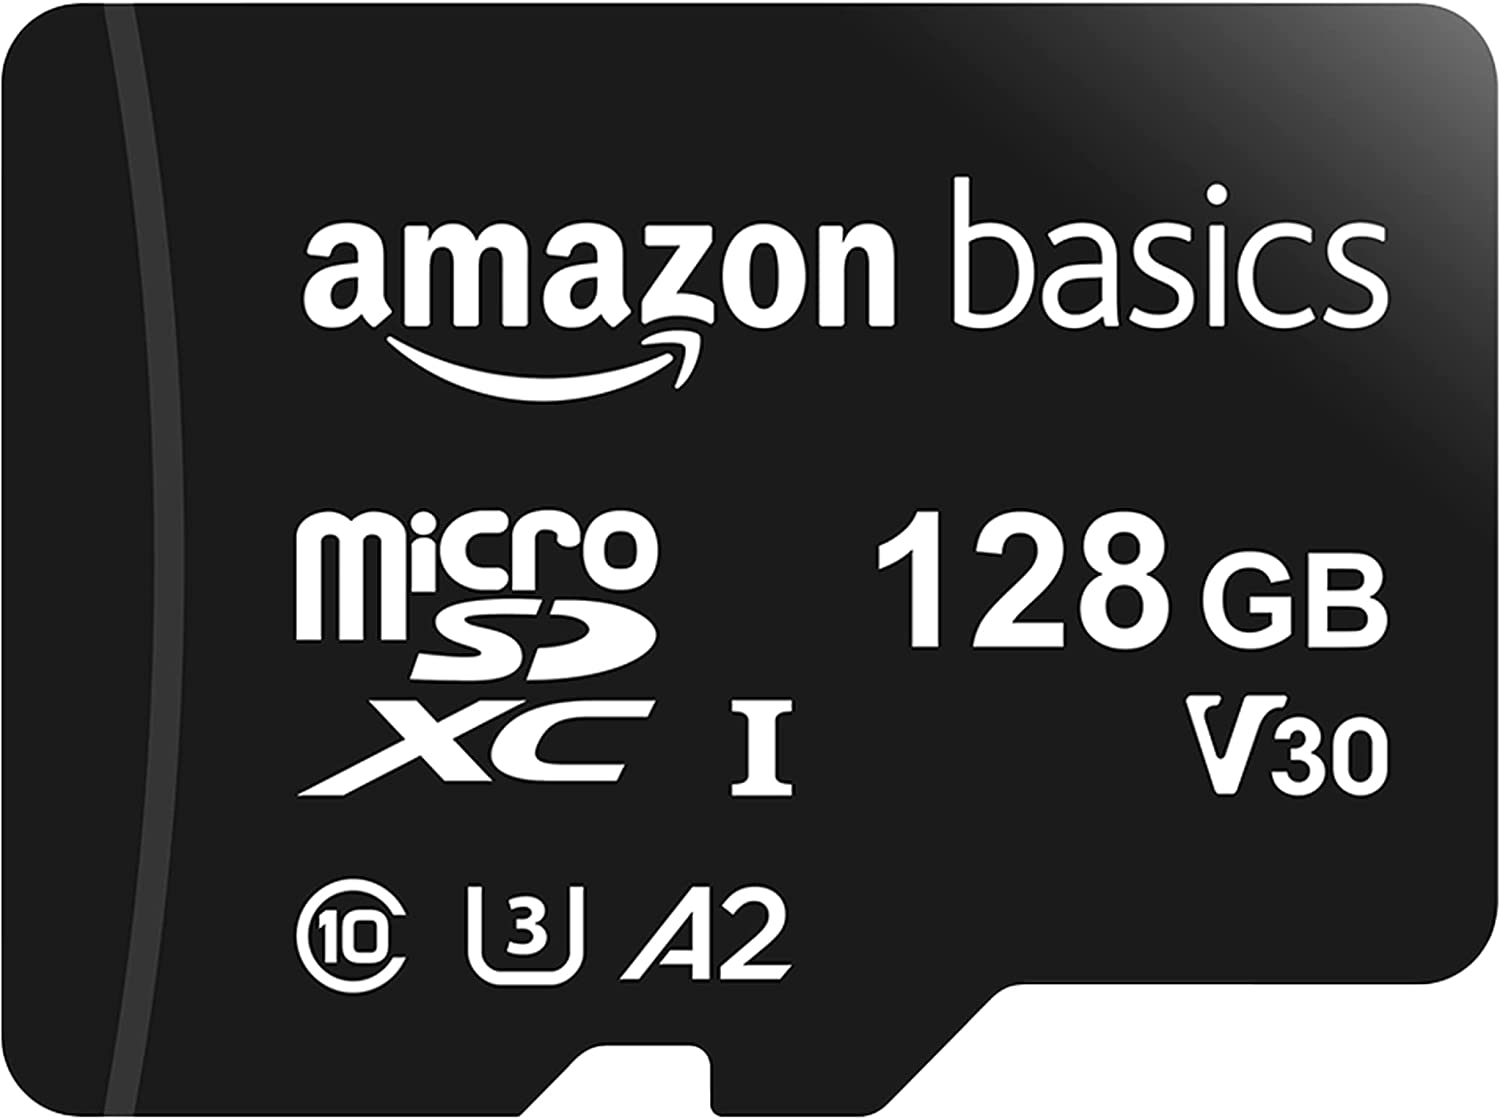 Amazon Basics microSDXC Memory Card with Full Size [...]